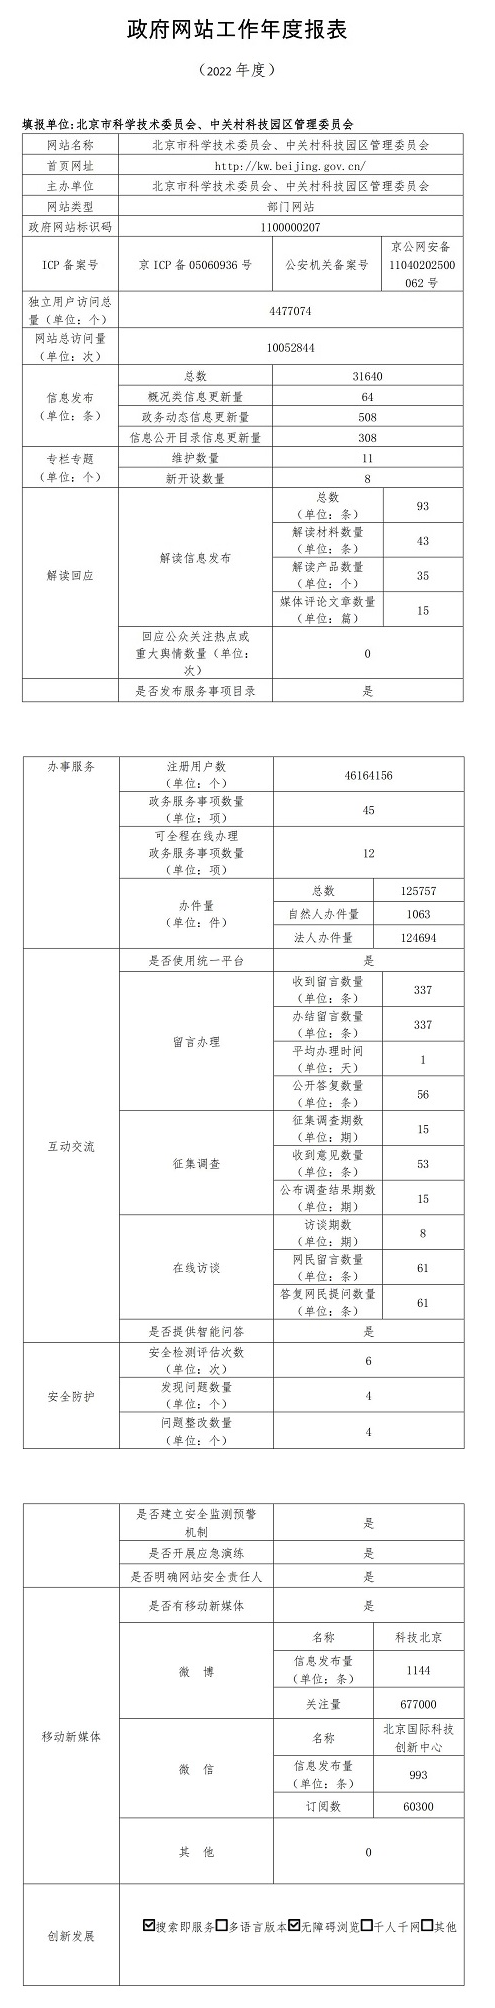 北京市科学技术委员会、中关村科技园区管理委员会2022年政府网站年度工作报表